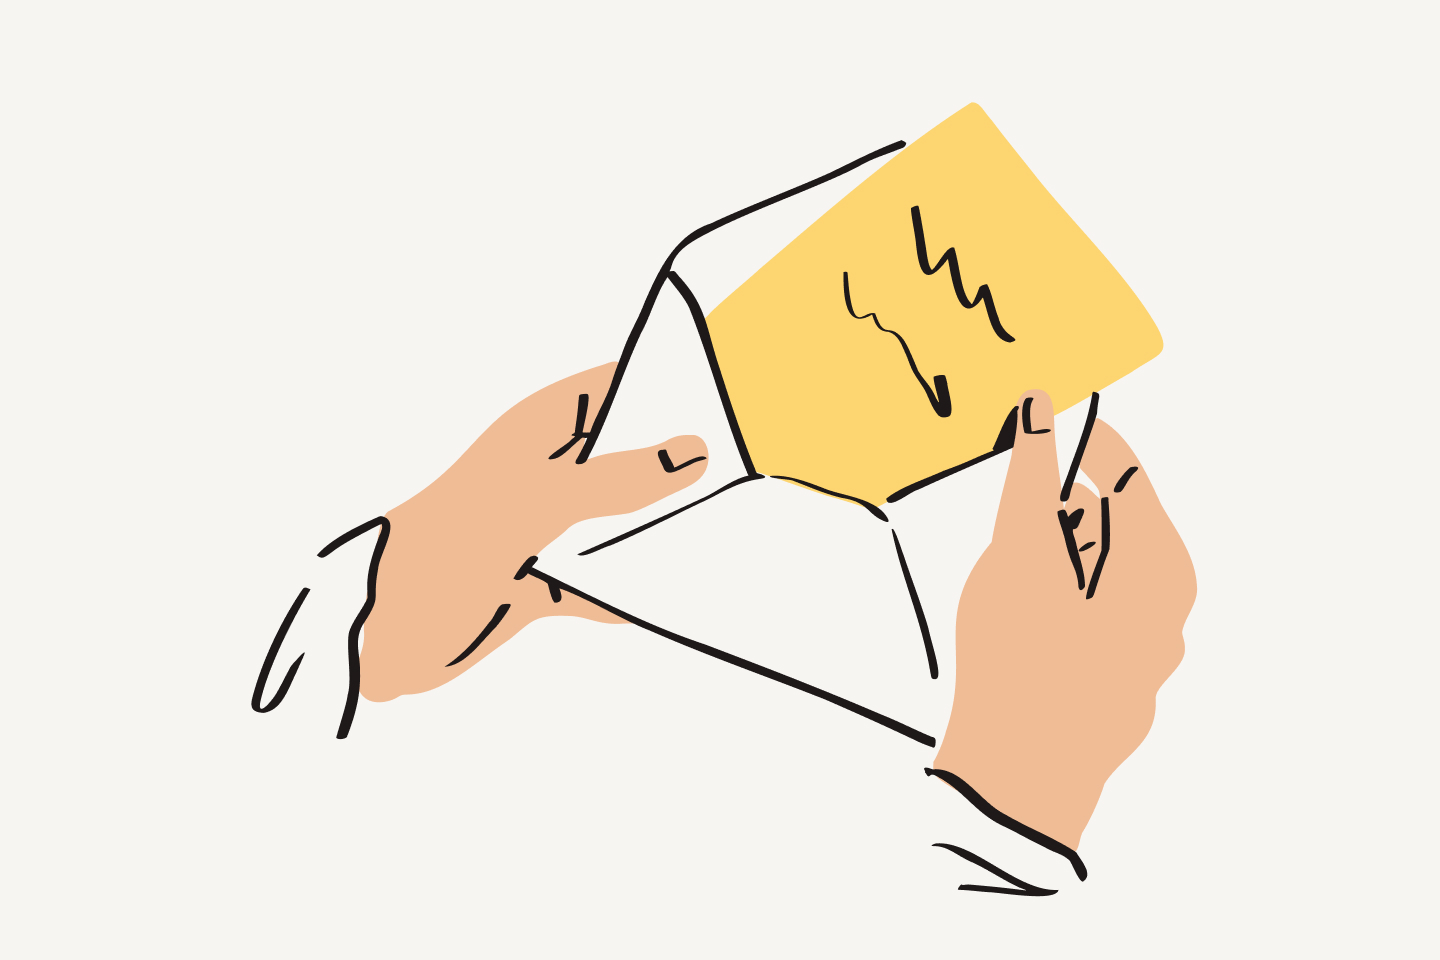 Personne sortant une feuille jaune avec des inscriptions d'une enveloppe